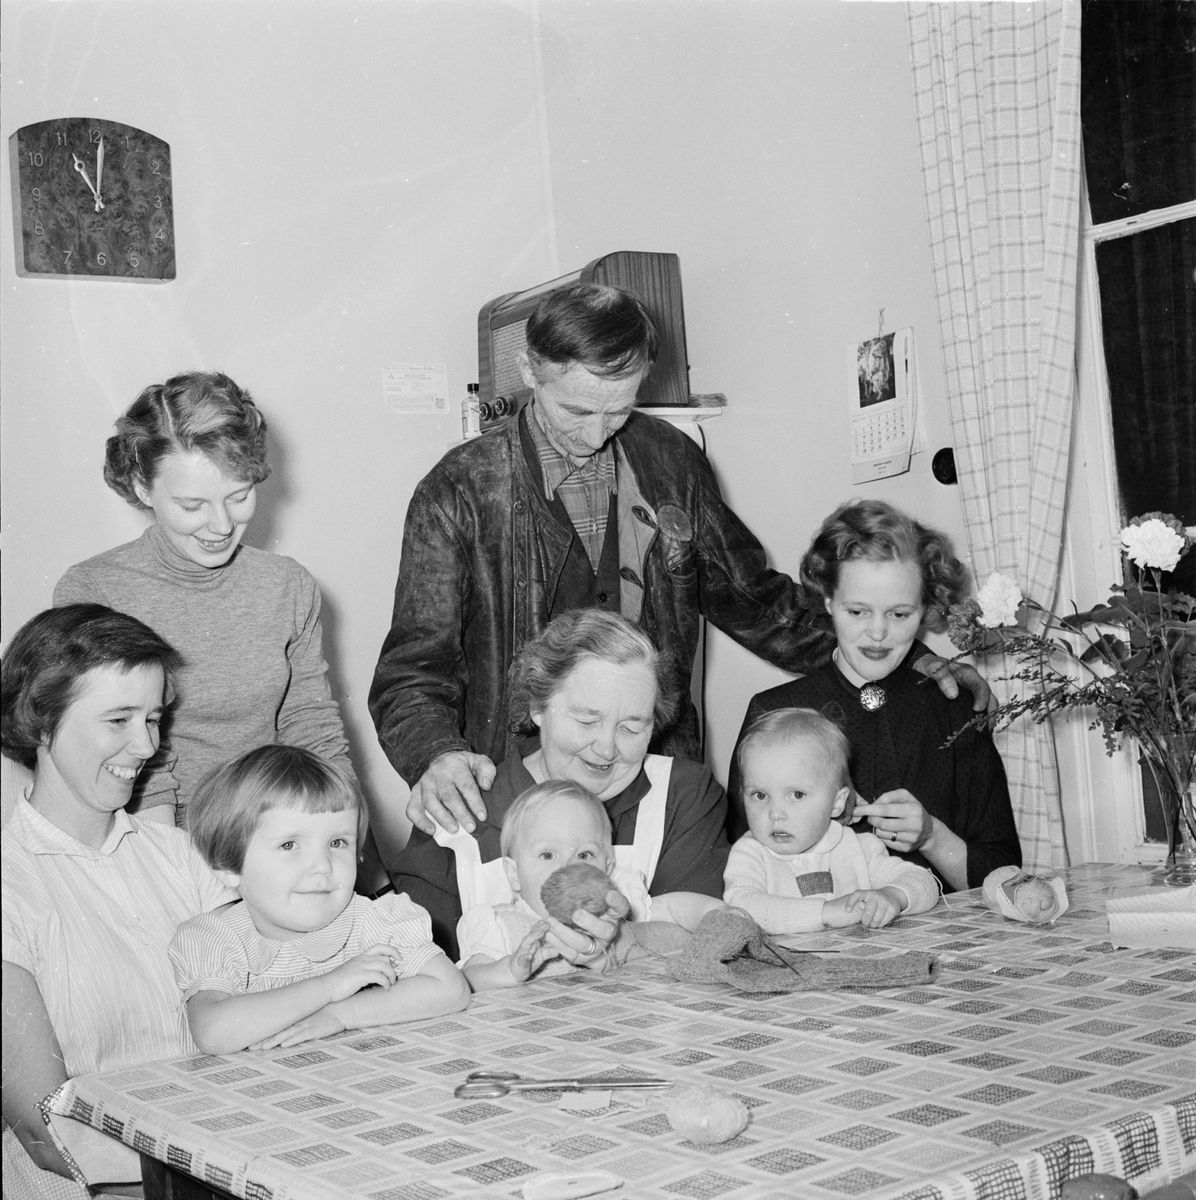 Lantbrukare Dina Eriksson, 1955 års mottagare av Insulanderska priset. Vid köksbordet med make, barn och barnbarn